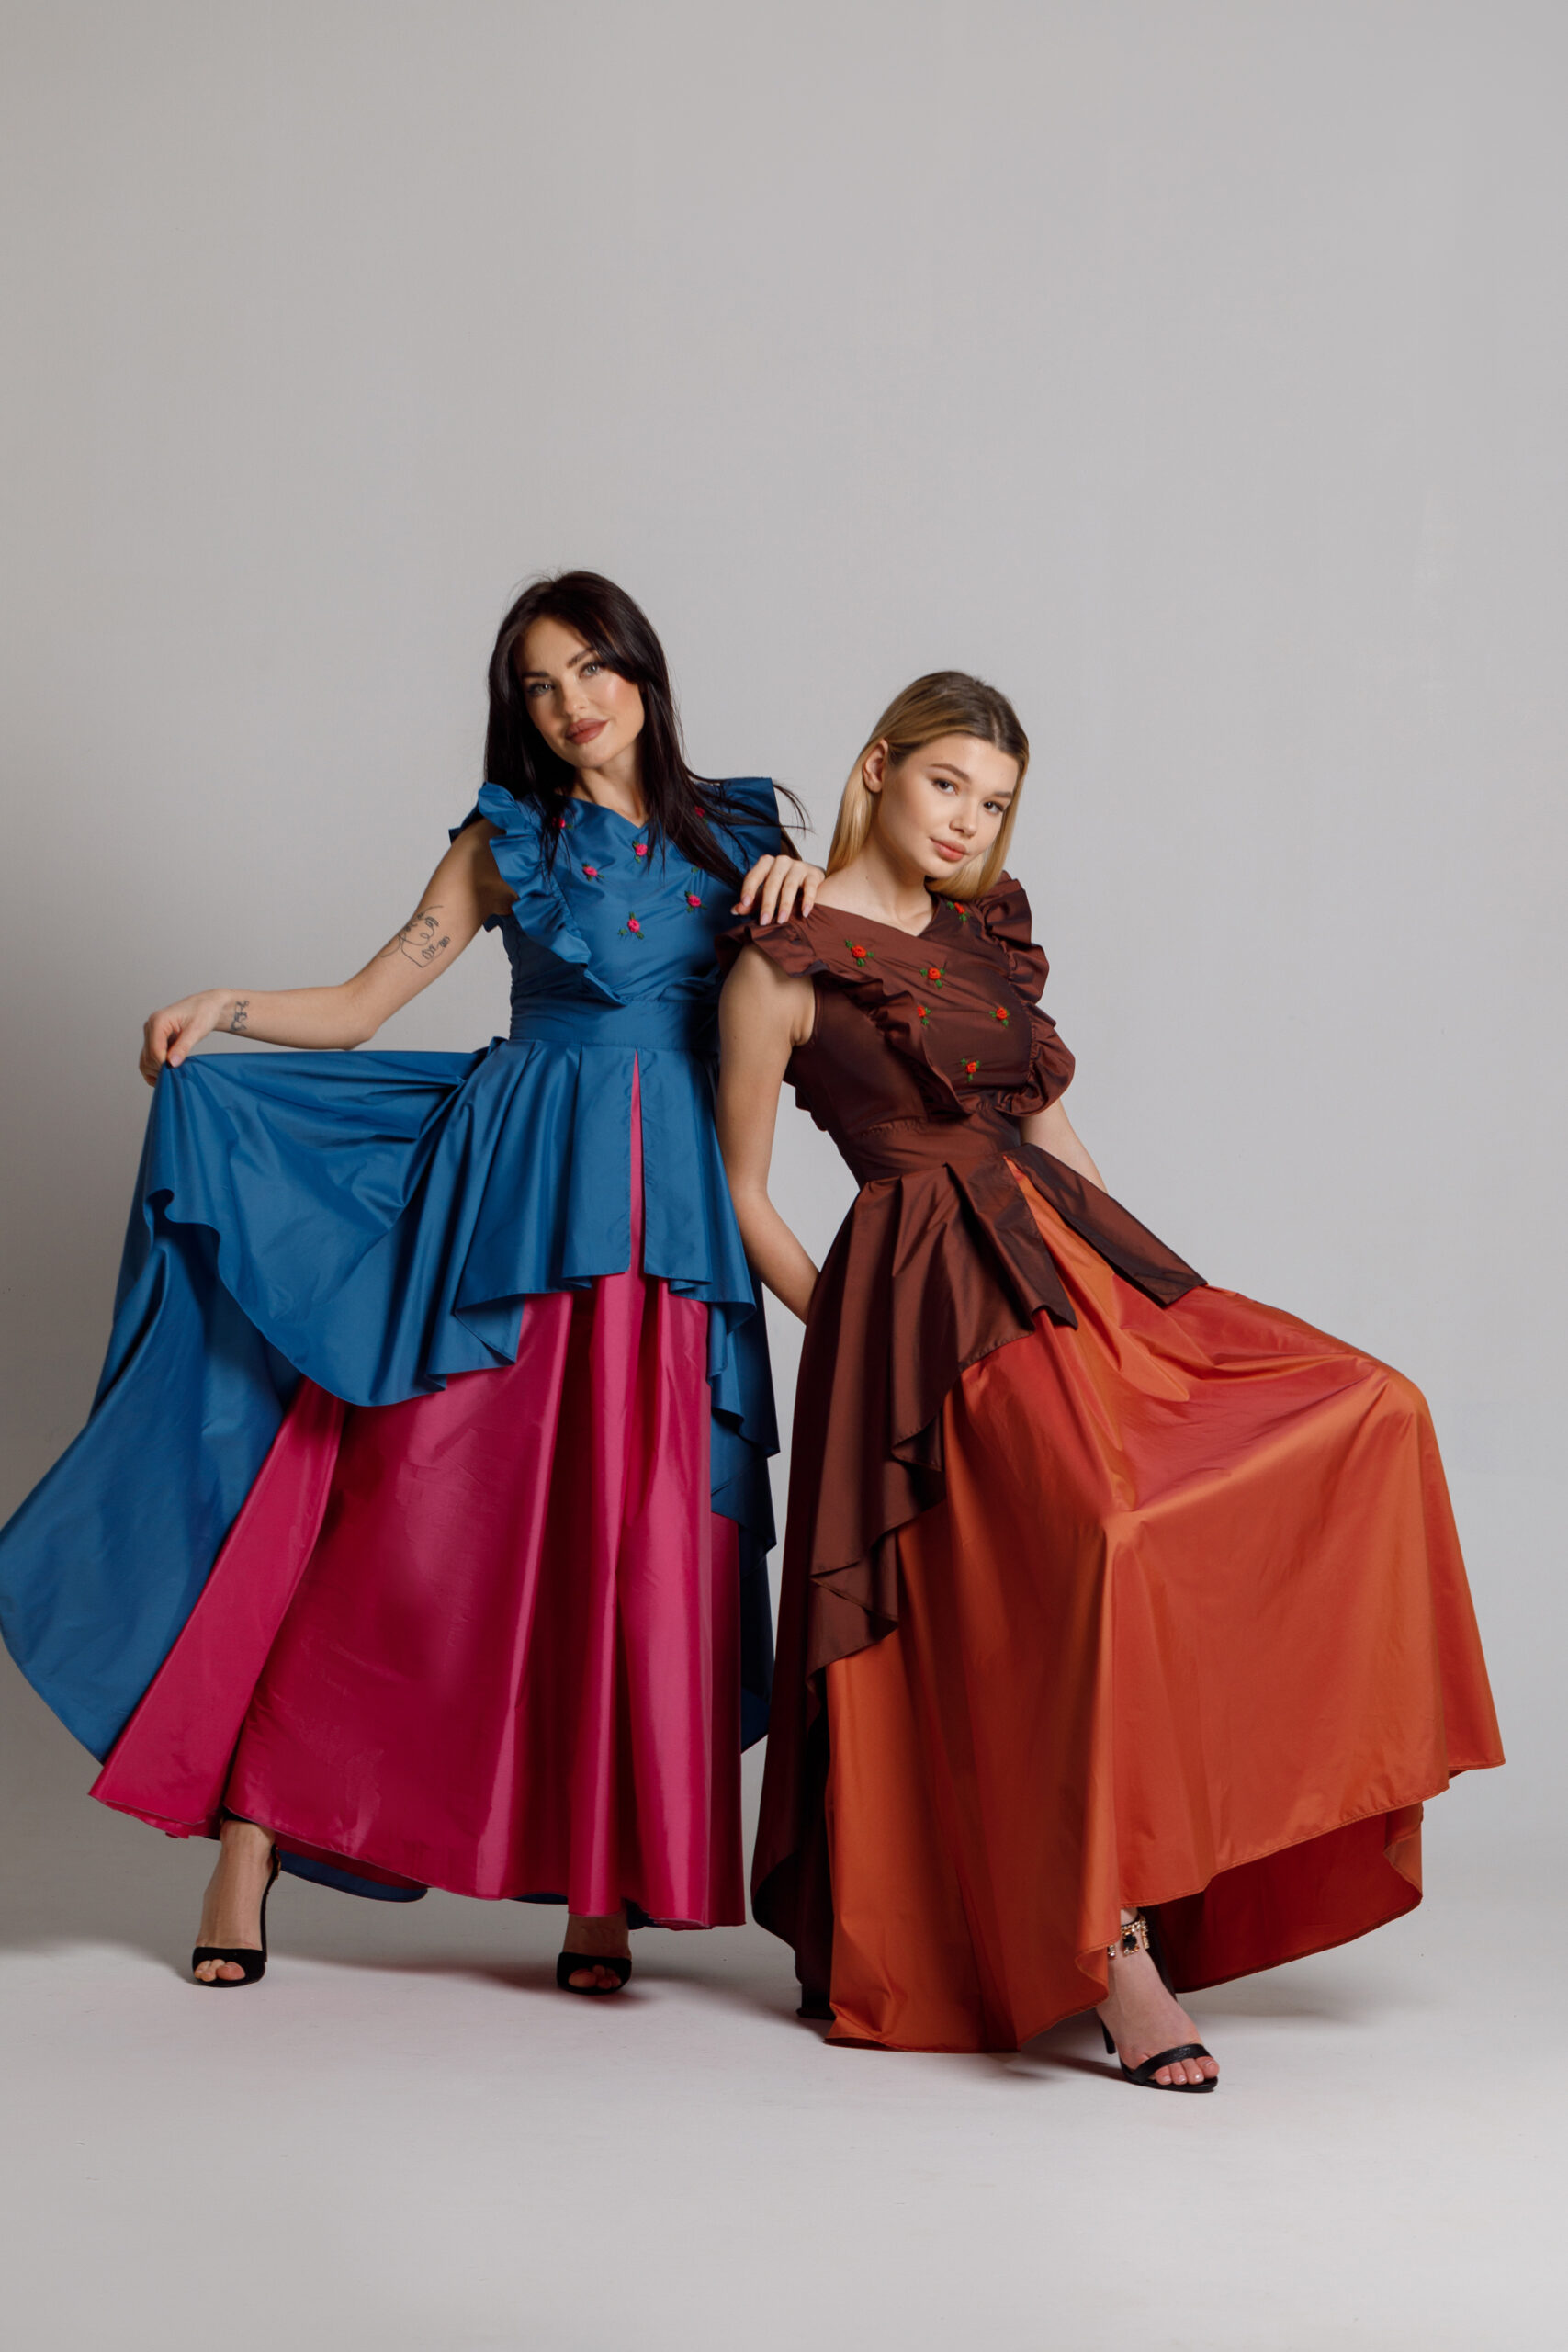 Elegant long blue ROSE dress. Natural fabrics, original design, handmade embroidery